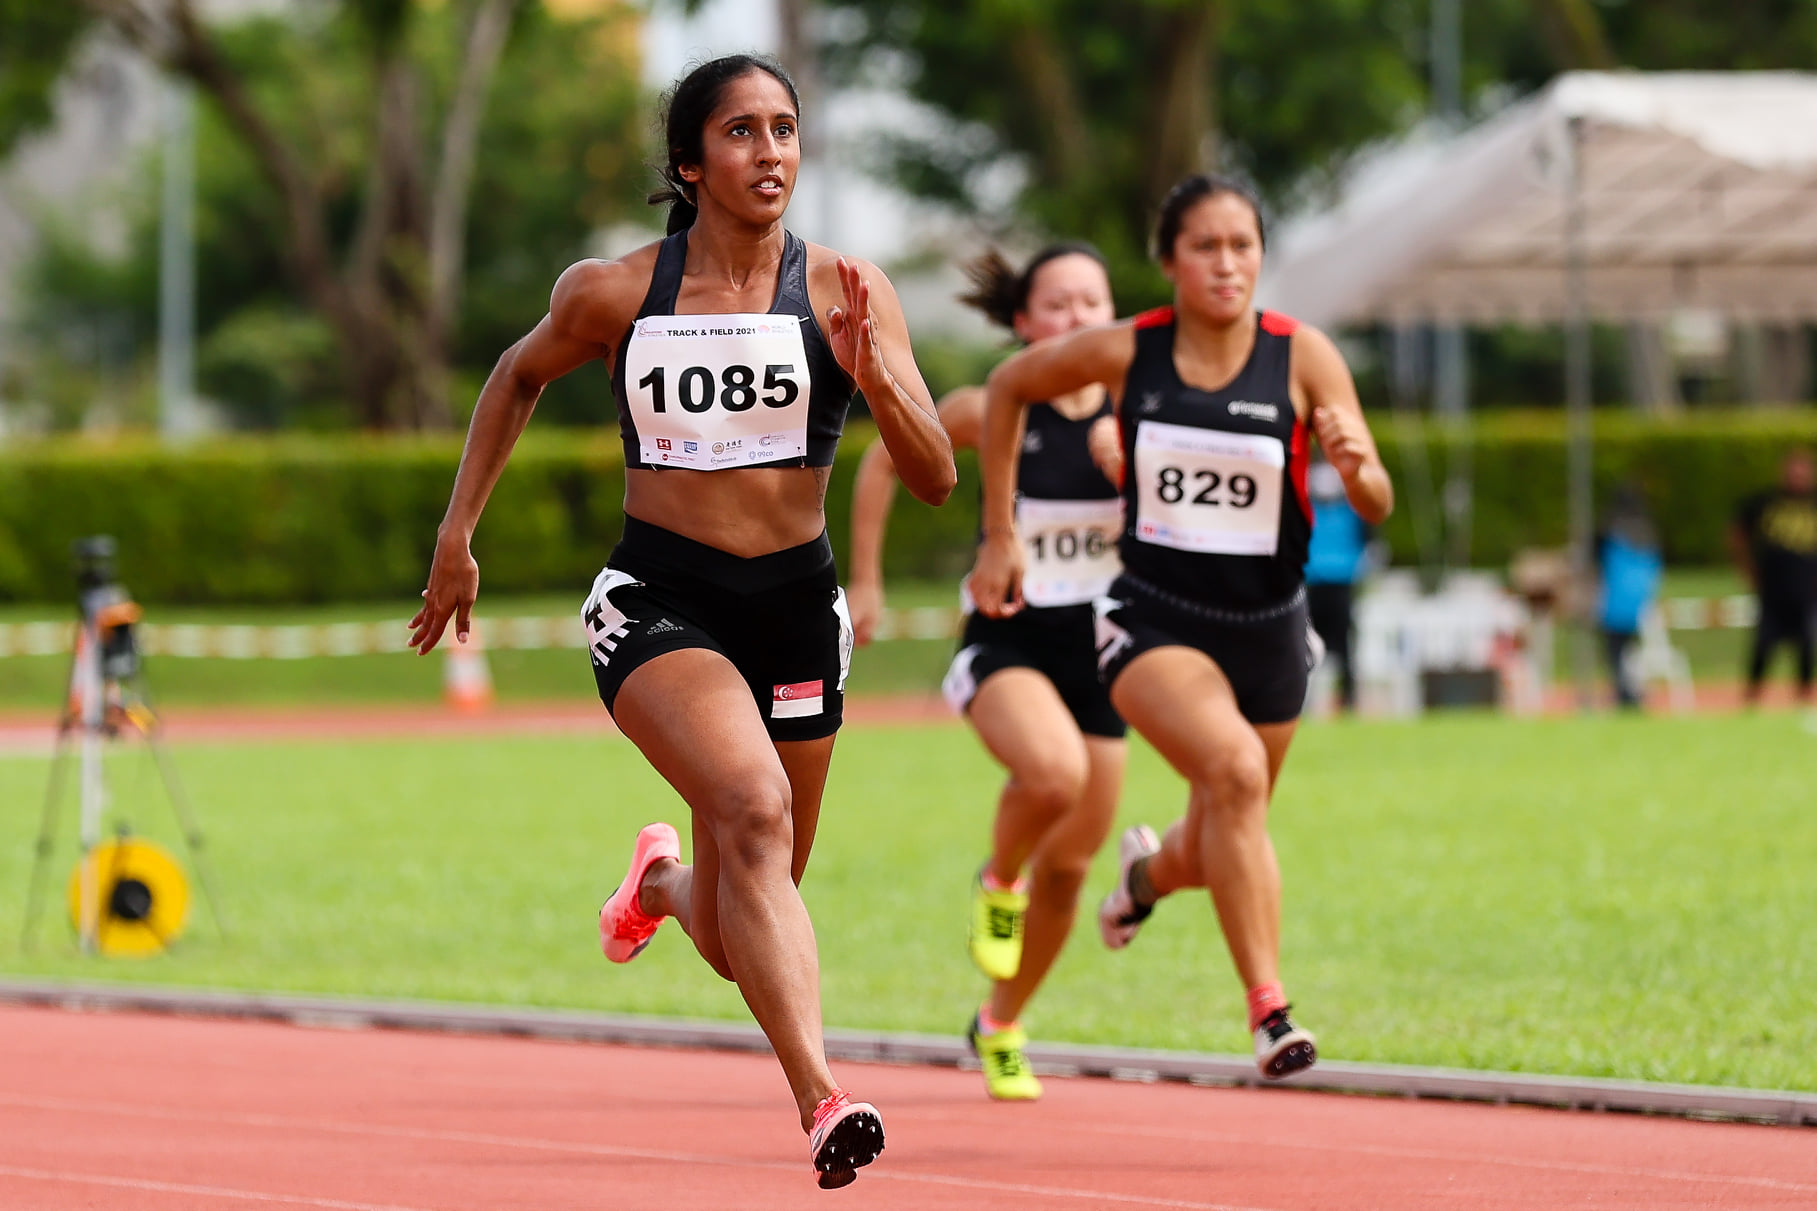 Nữ hoàng chạy ngắn SEA Games Shanti Pereira phá kỷ lục quốc gia, vào bán kết chạy 200m nữ thế giới